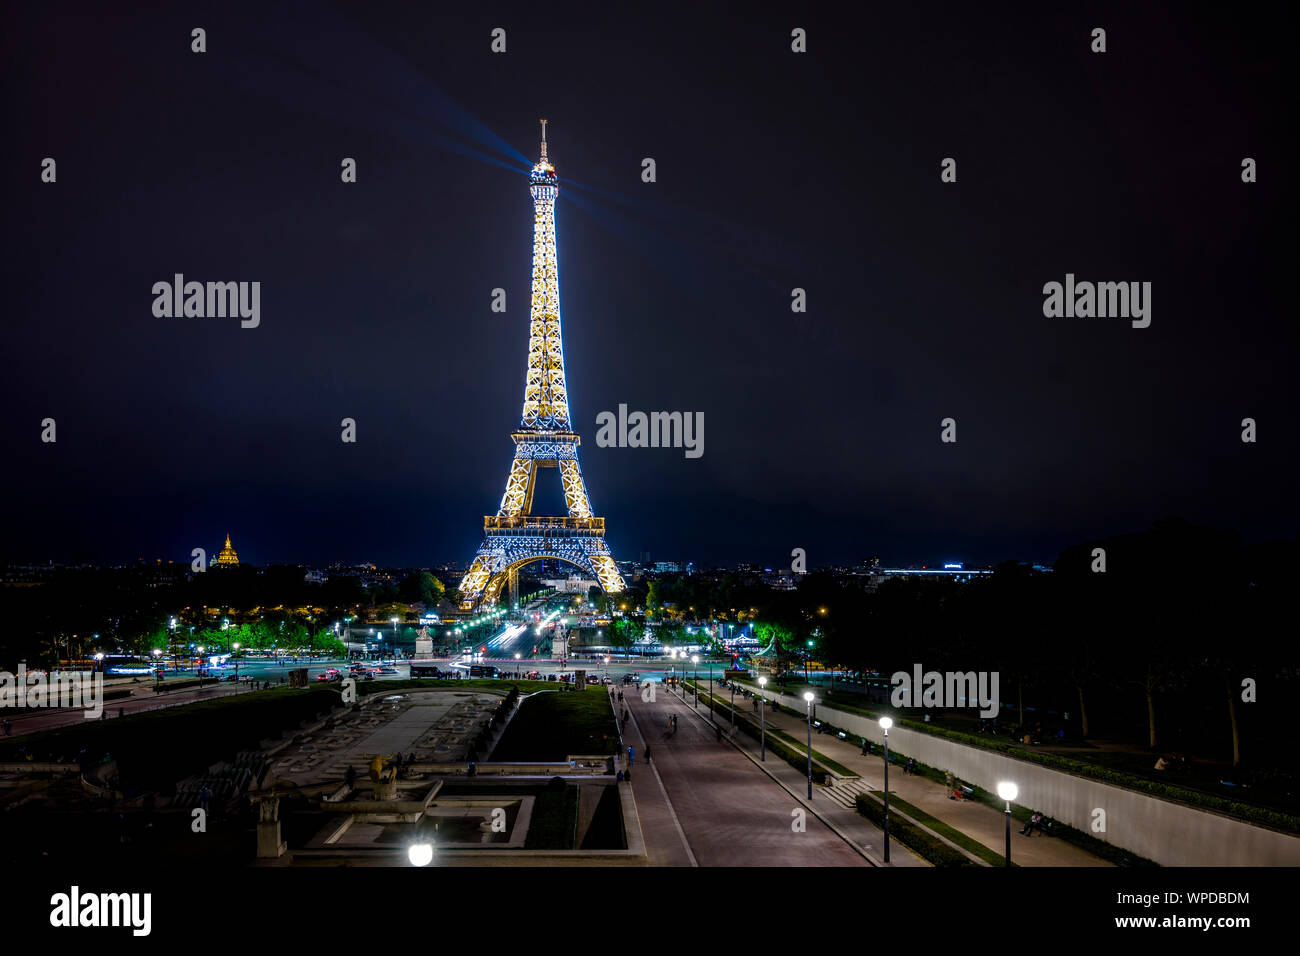 La fierté des Parisiens, la Tour Eiffel avec des lumières scintillantes comme un phare s'élève au-dessus de la ville et montre le chemin pour les touristes de partout dans le Banque D'Images